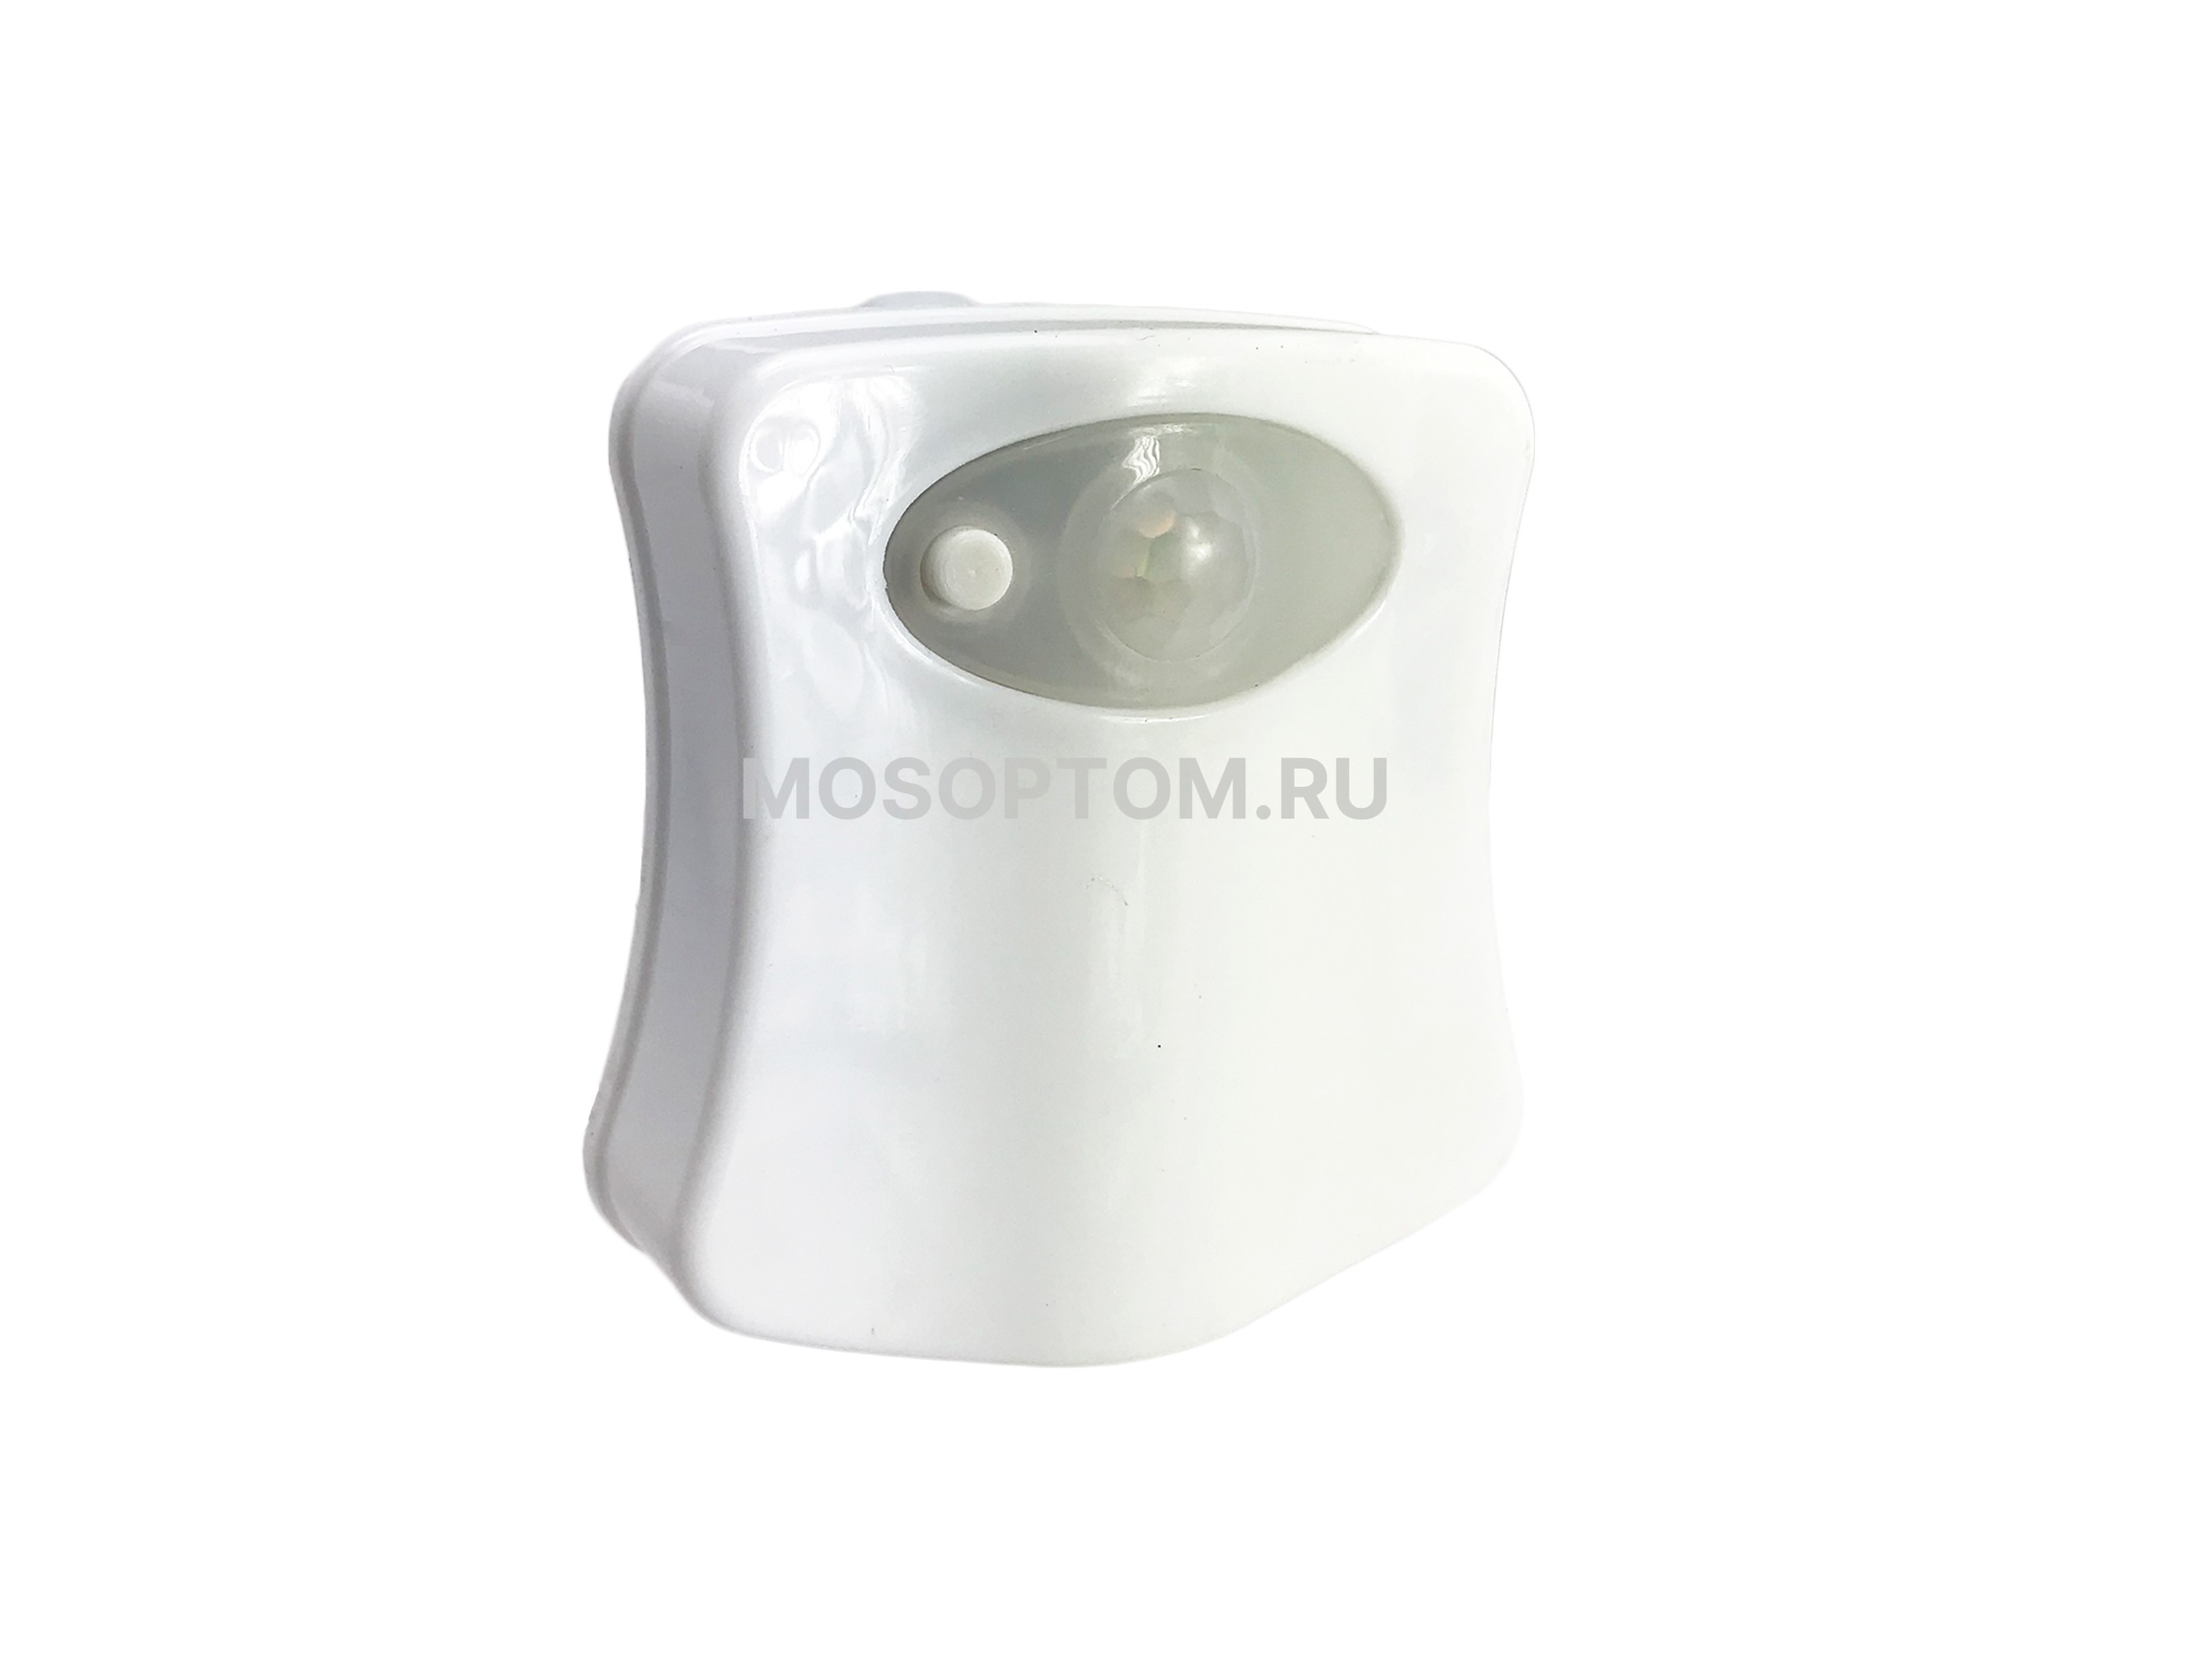 Подсветка для унитаза LED с датчиком движения Light Bowl оптом